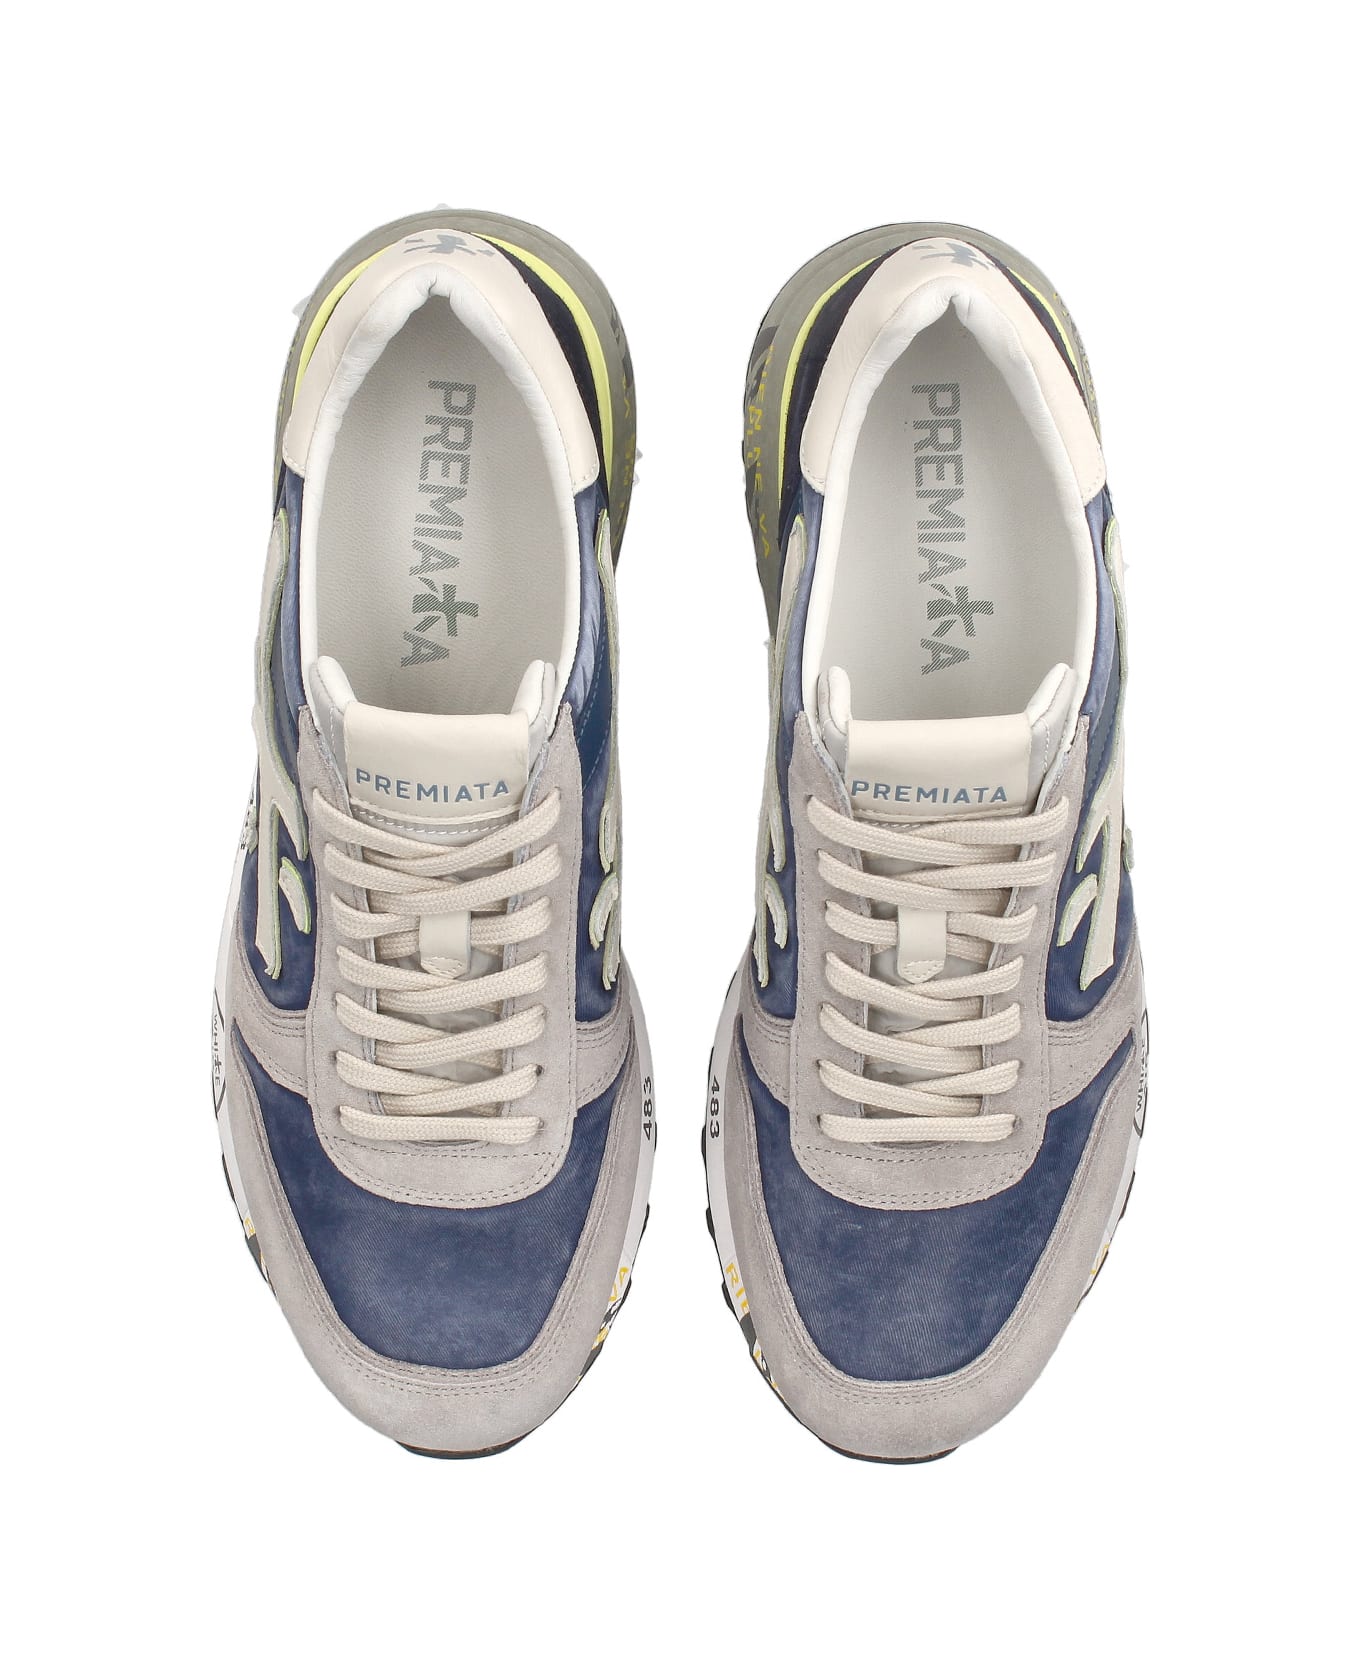 Premiata Mick 6617 Gray Blue Sneaker